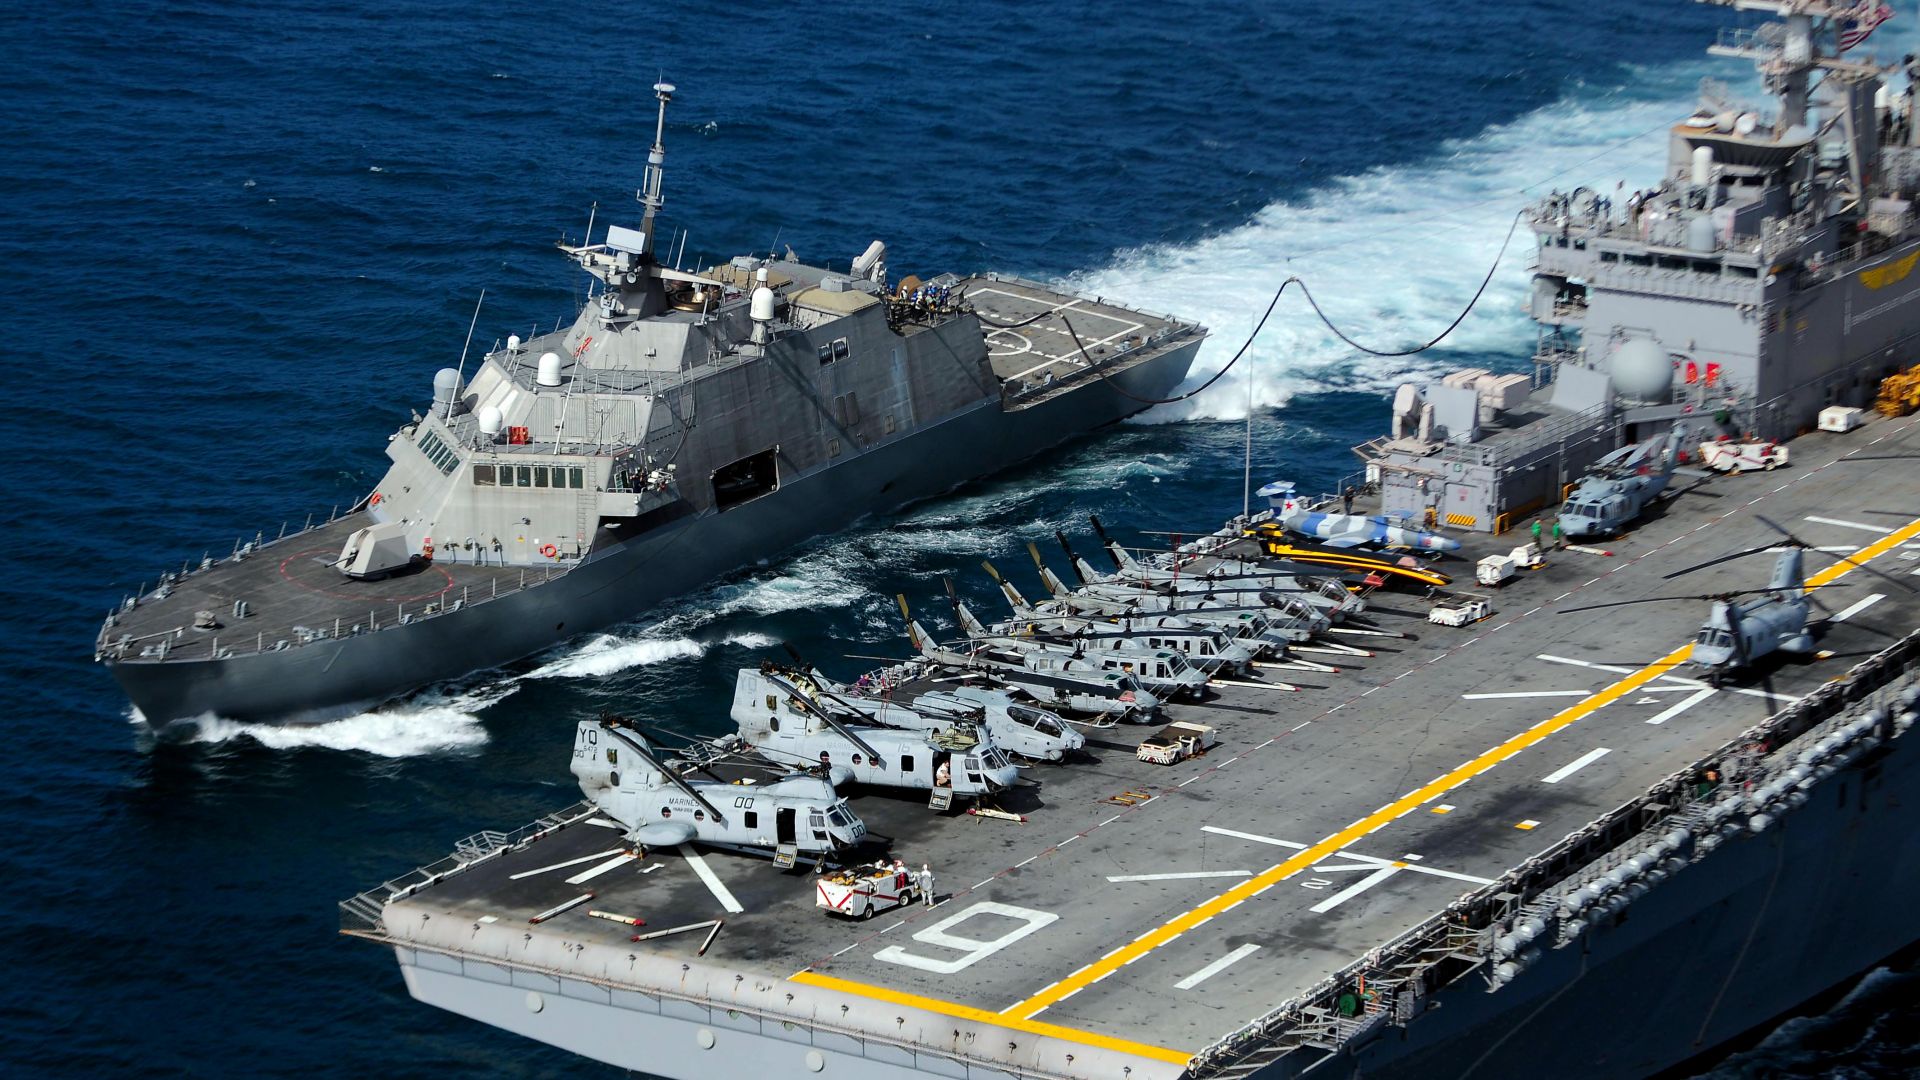 ЮСС Фридом, ЛЦС-1, литоральный боевой корабль, ВМС США, USS Freedom, LCS-1, lead ship, Freedom class, littoral combat, USA Navy (horizontal)